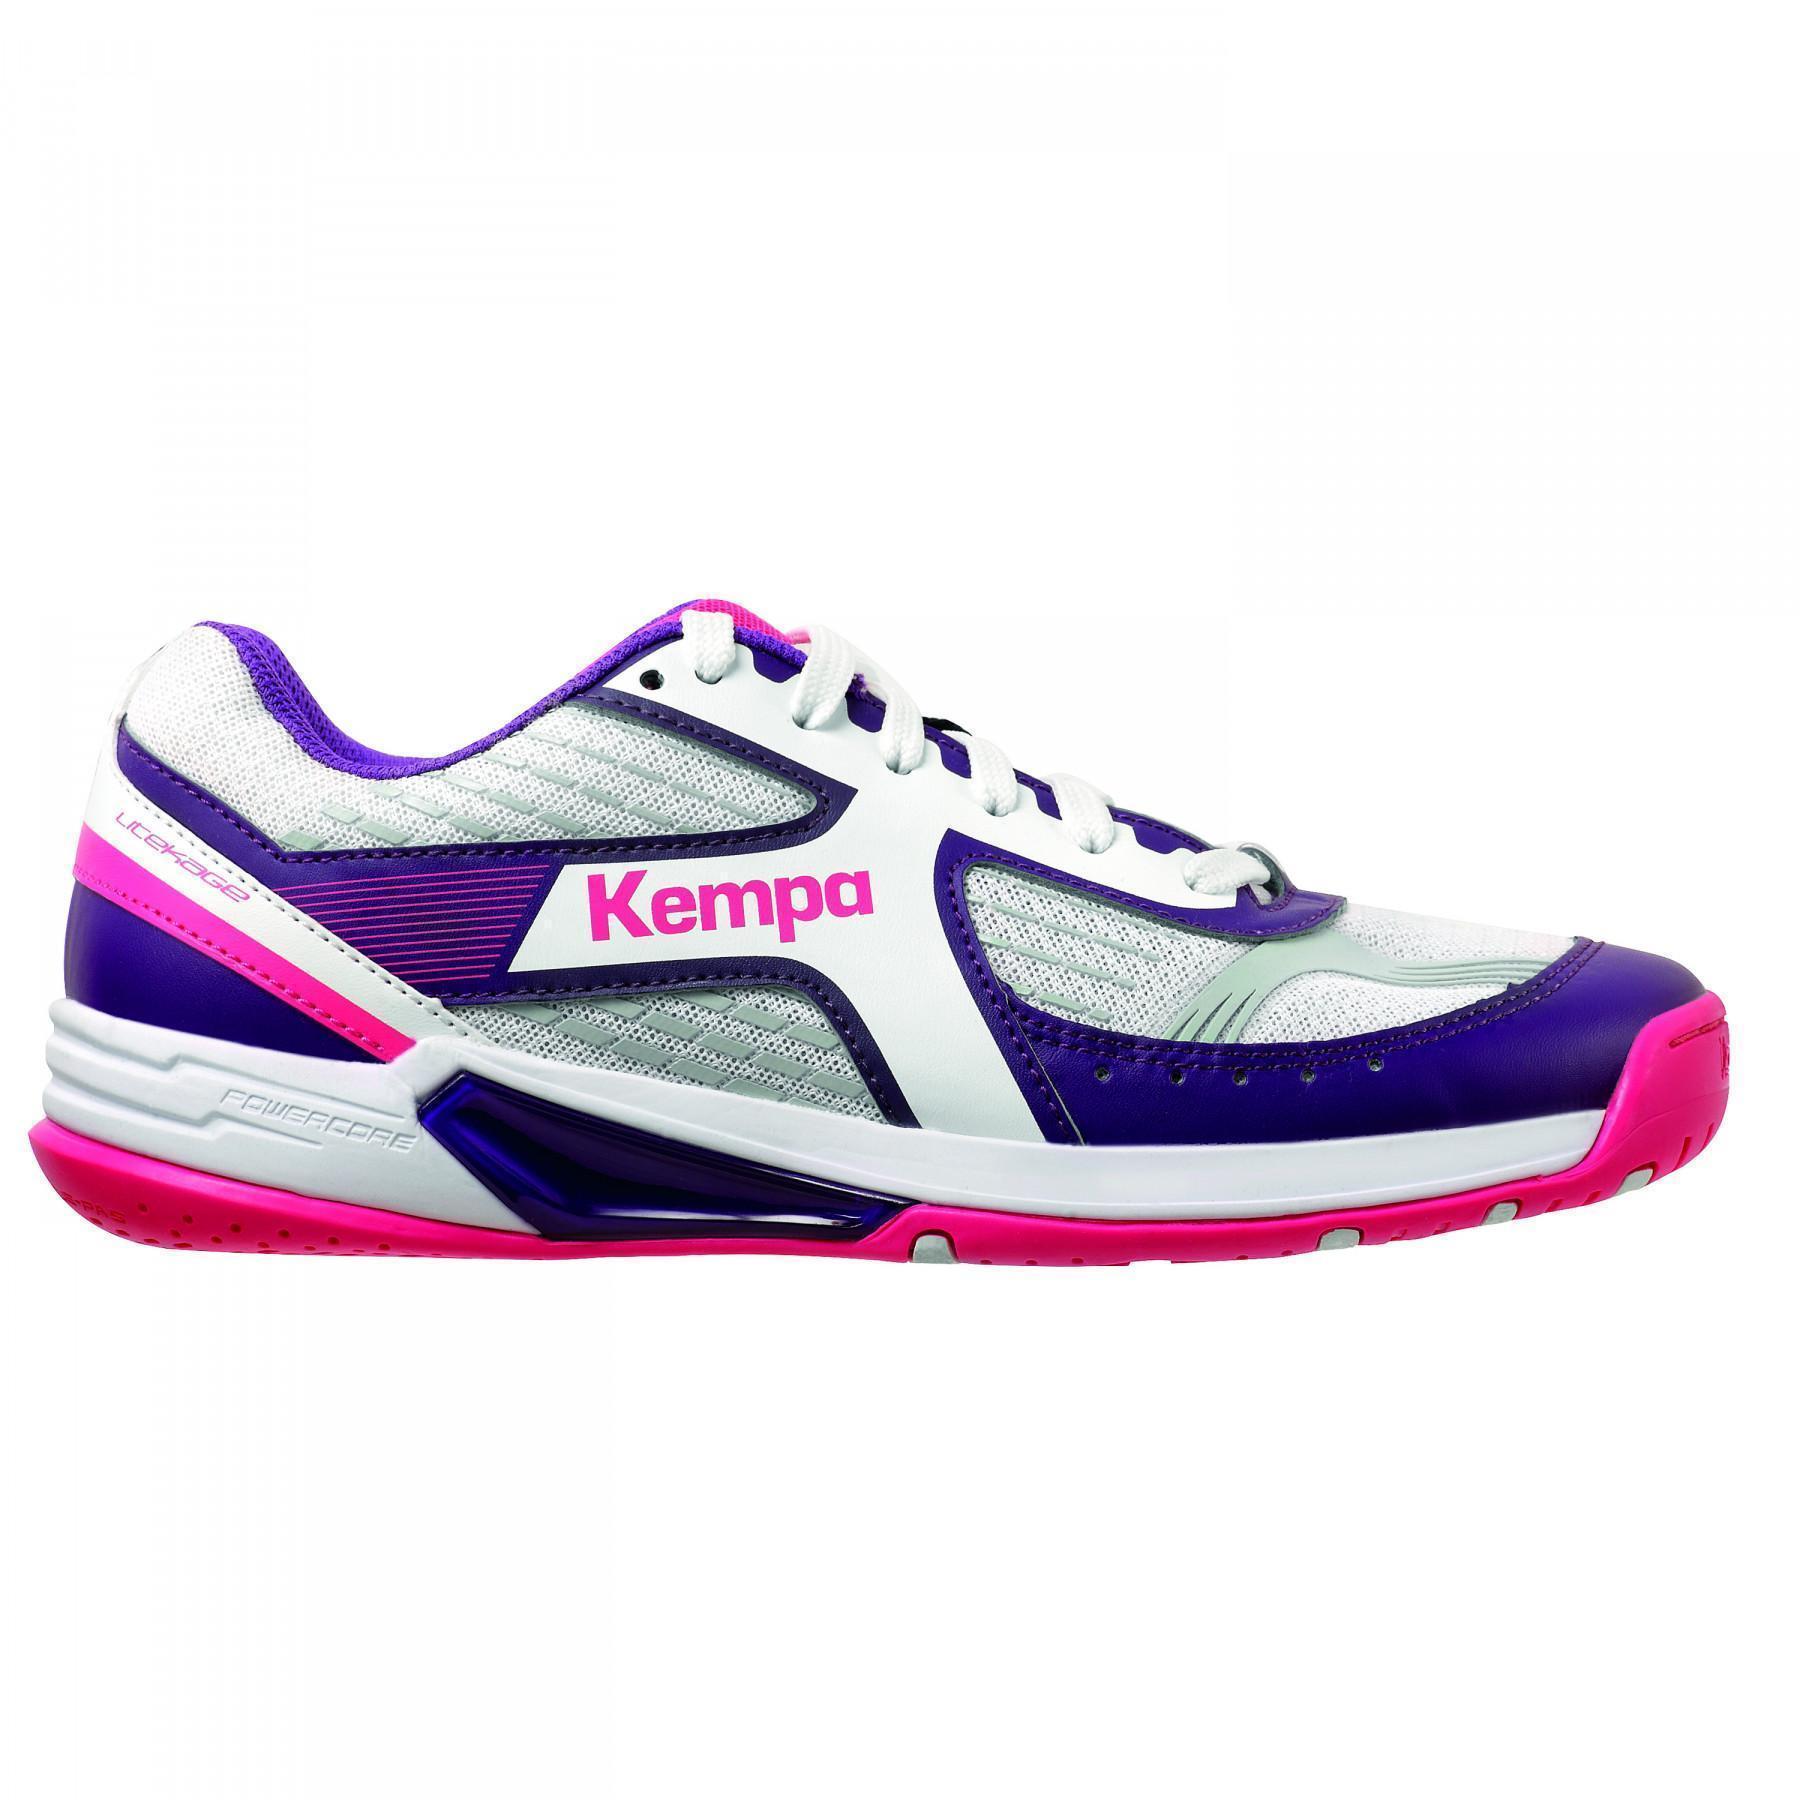 Sapatos de Mulher Kempa Wing